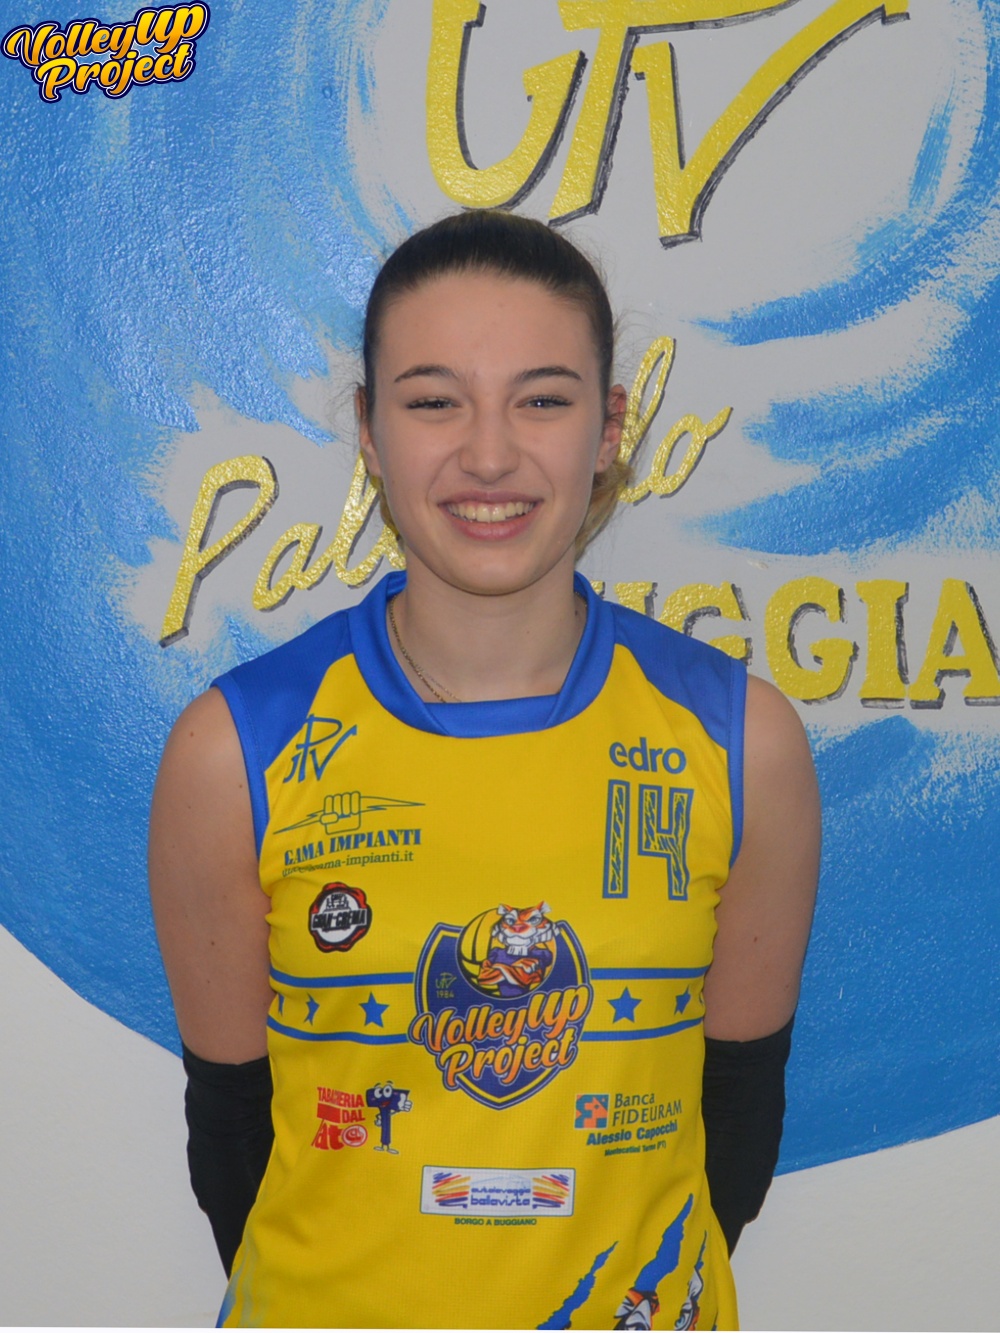 Upv Buggiano Volley Up Project - Irene Mostardini, grinta e gioventu’ in seconda linea